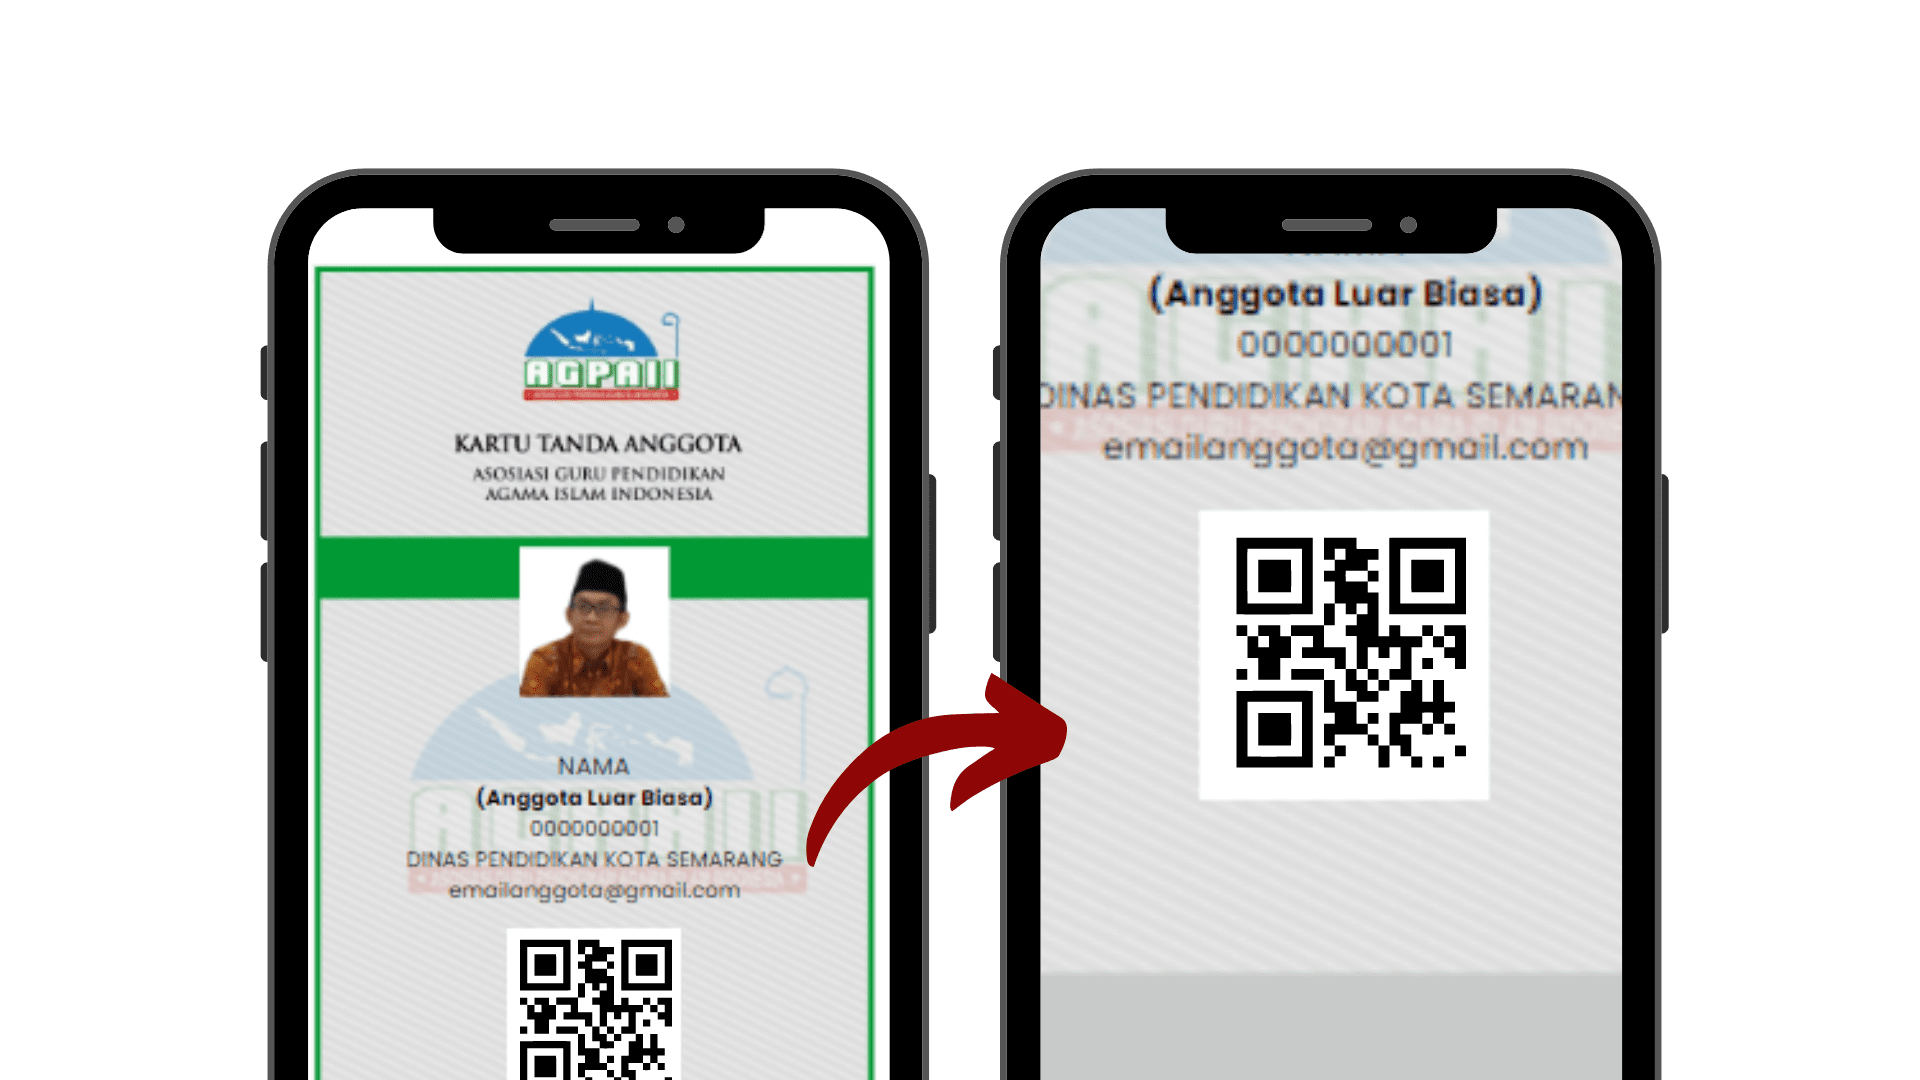 Kartu Tanda Anggota Digital Barcode